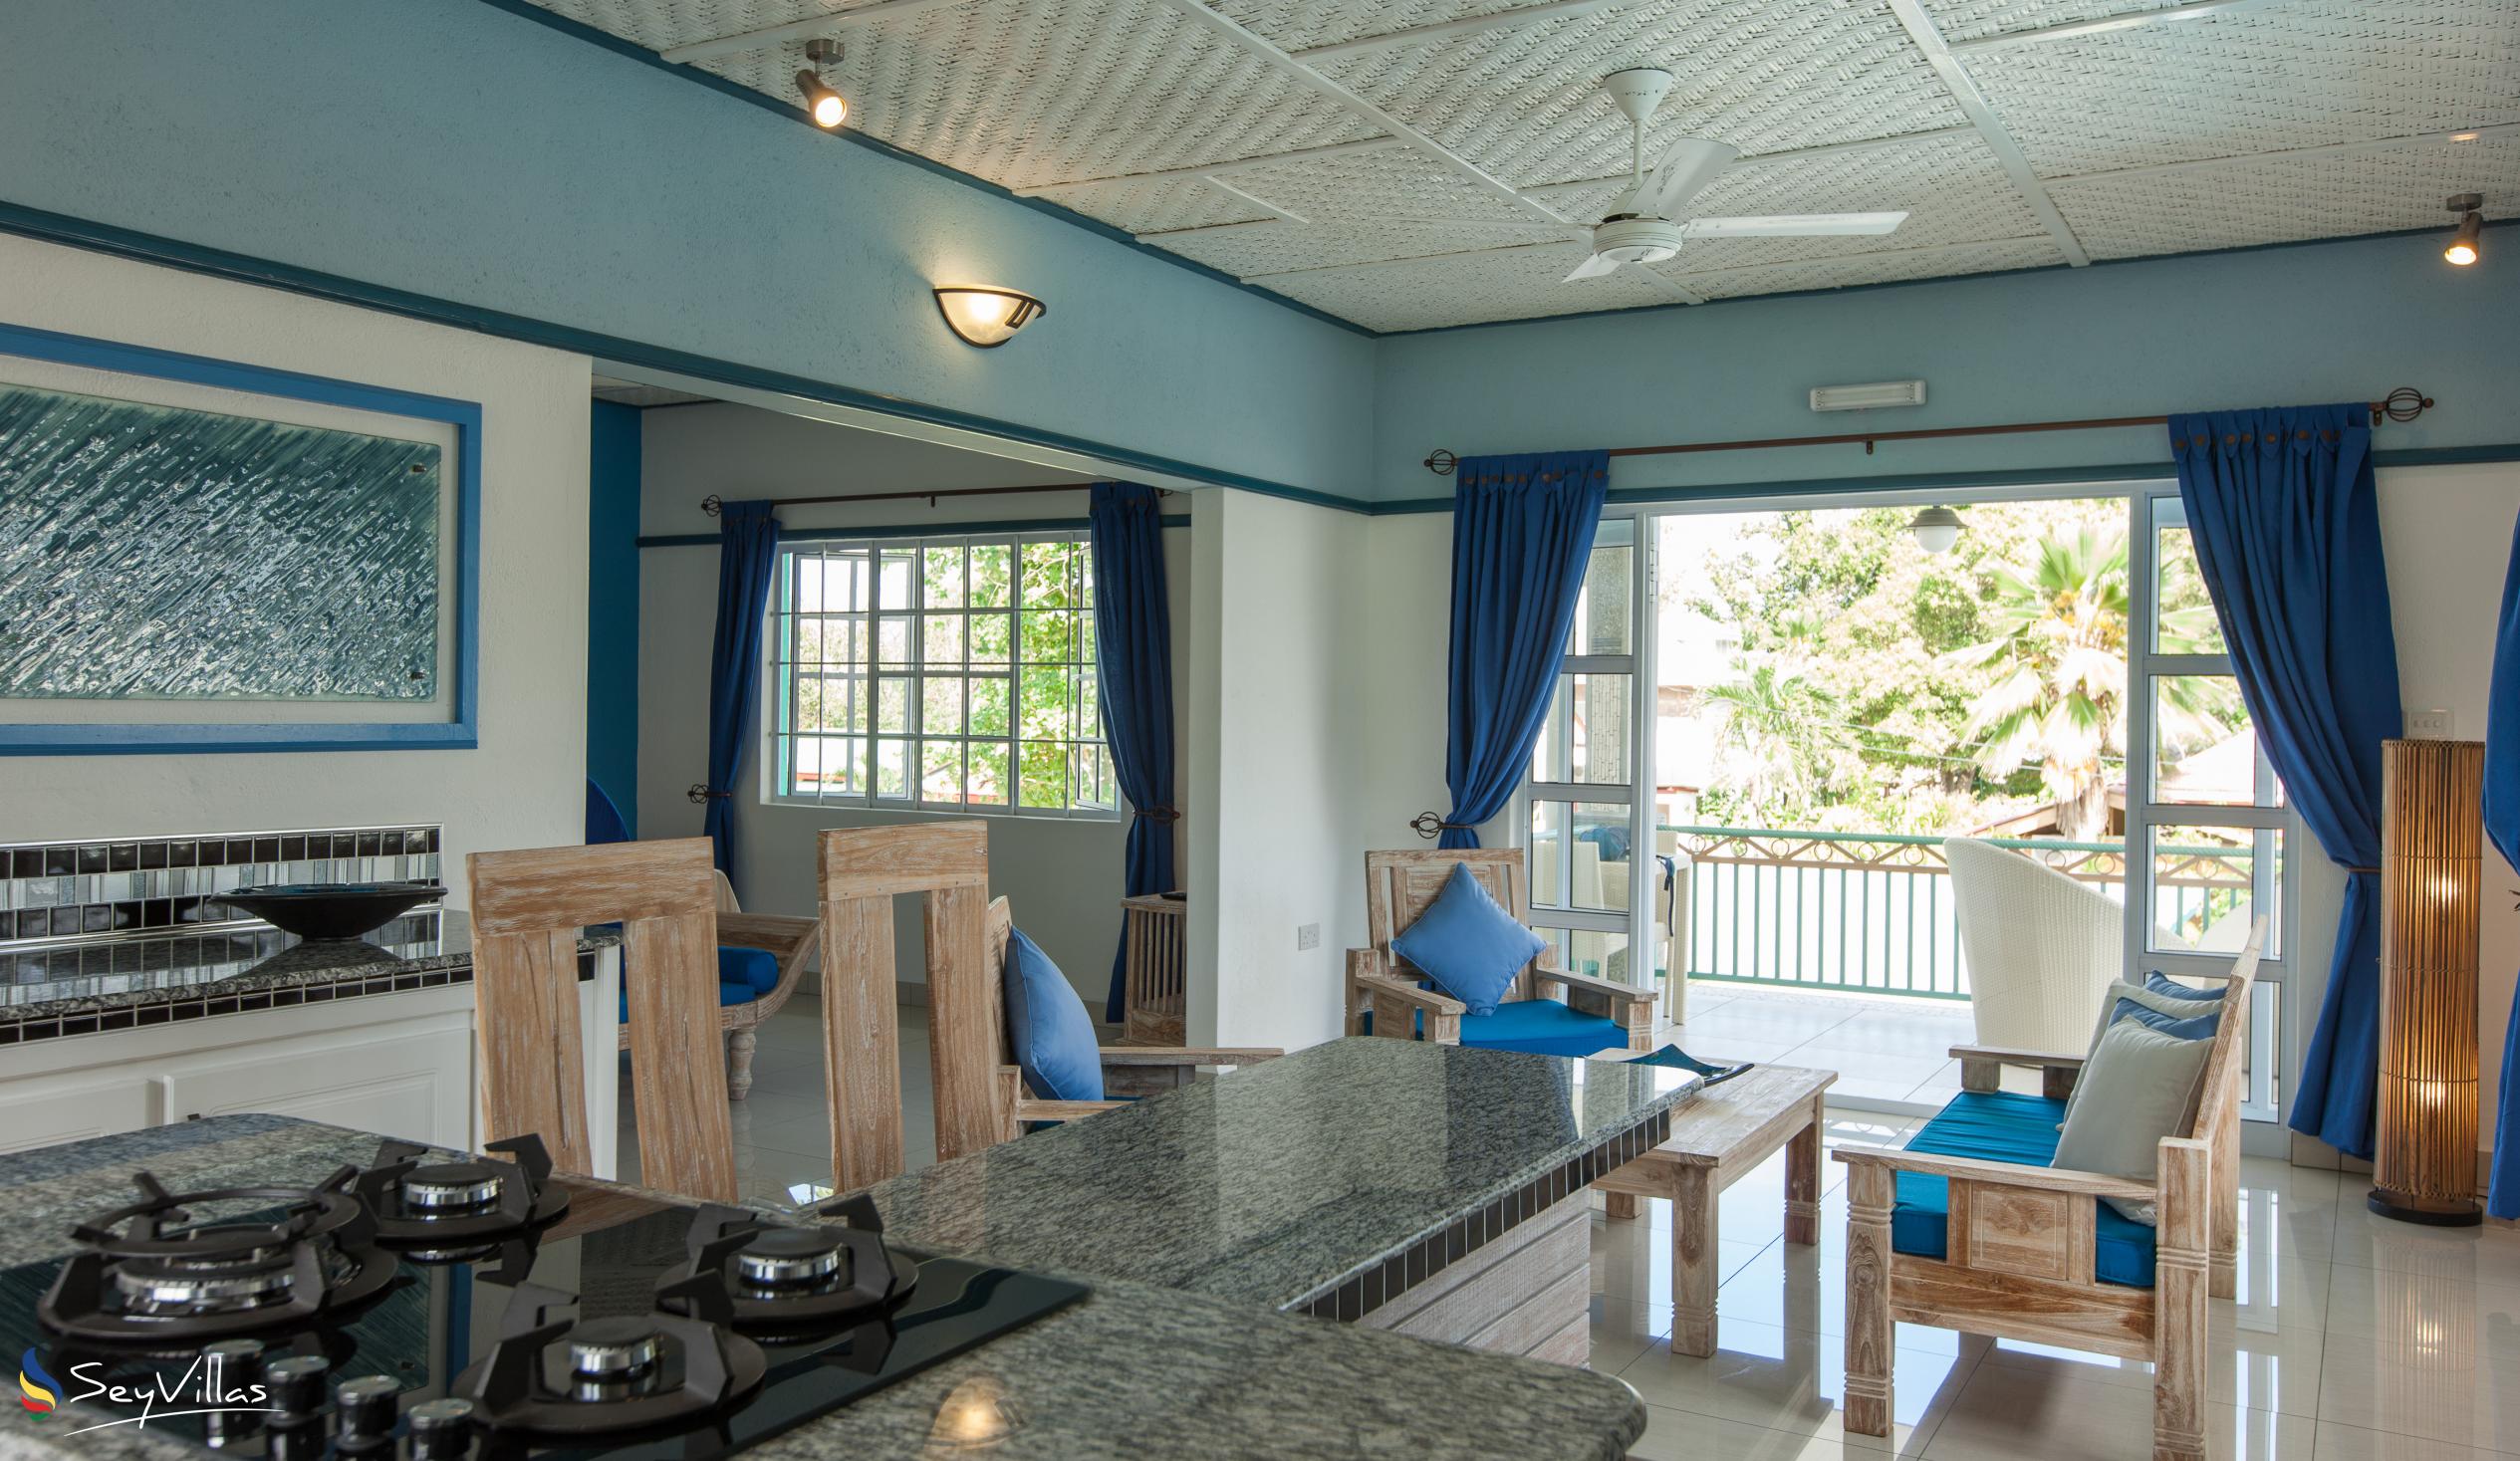 Foto 54: Villa Charme De L'ile - Appartamento Deluxe con vista piscina - La Digue (Seychelles)